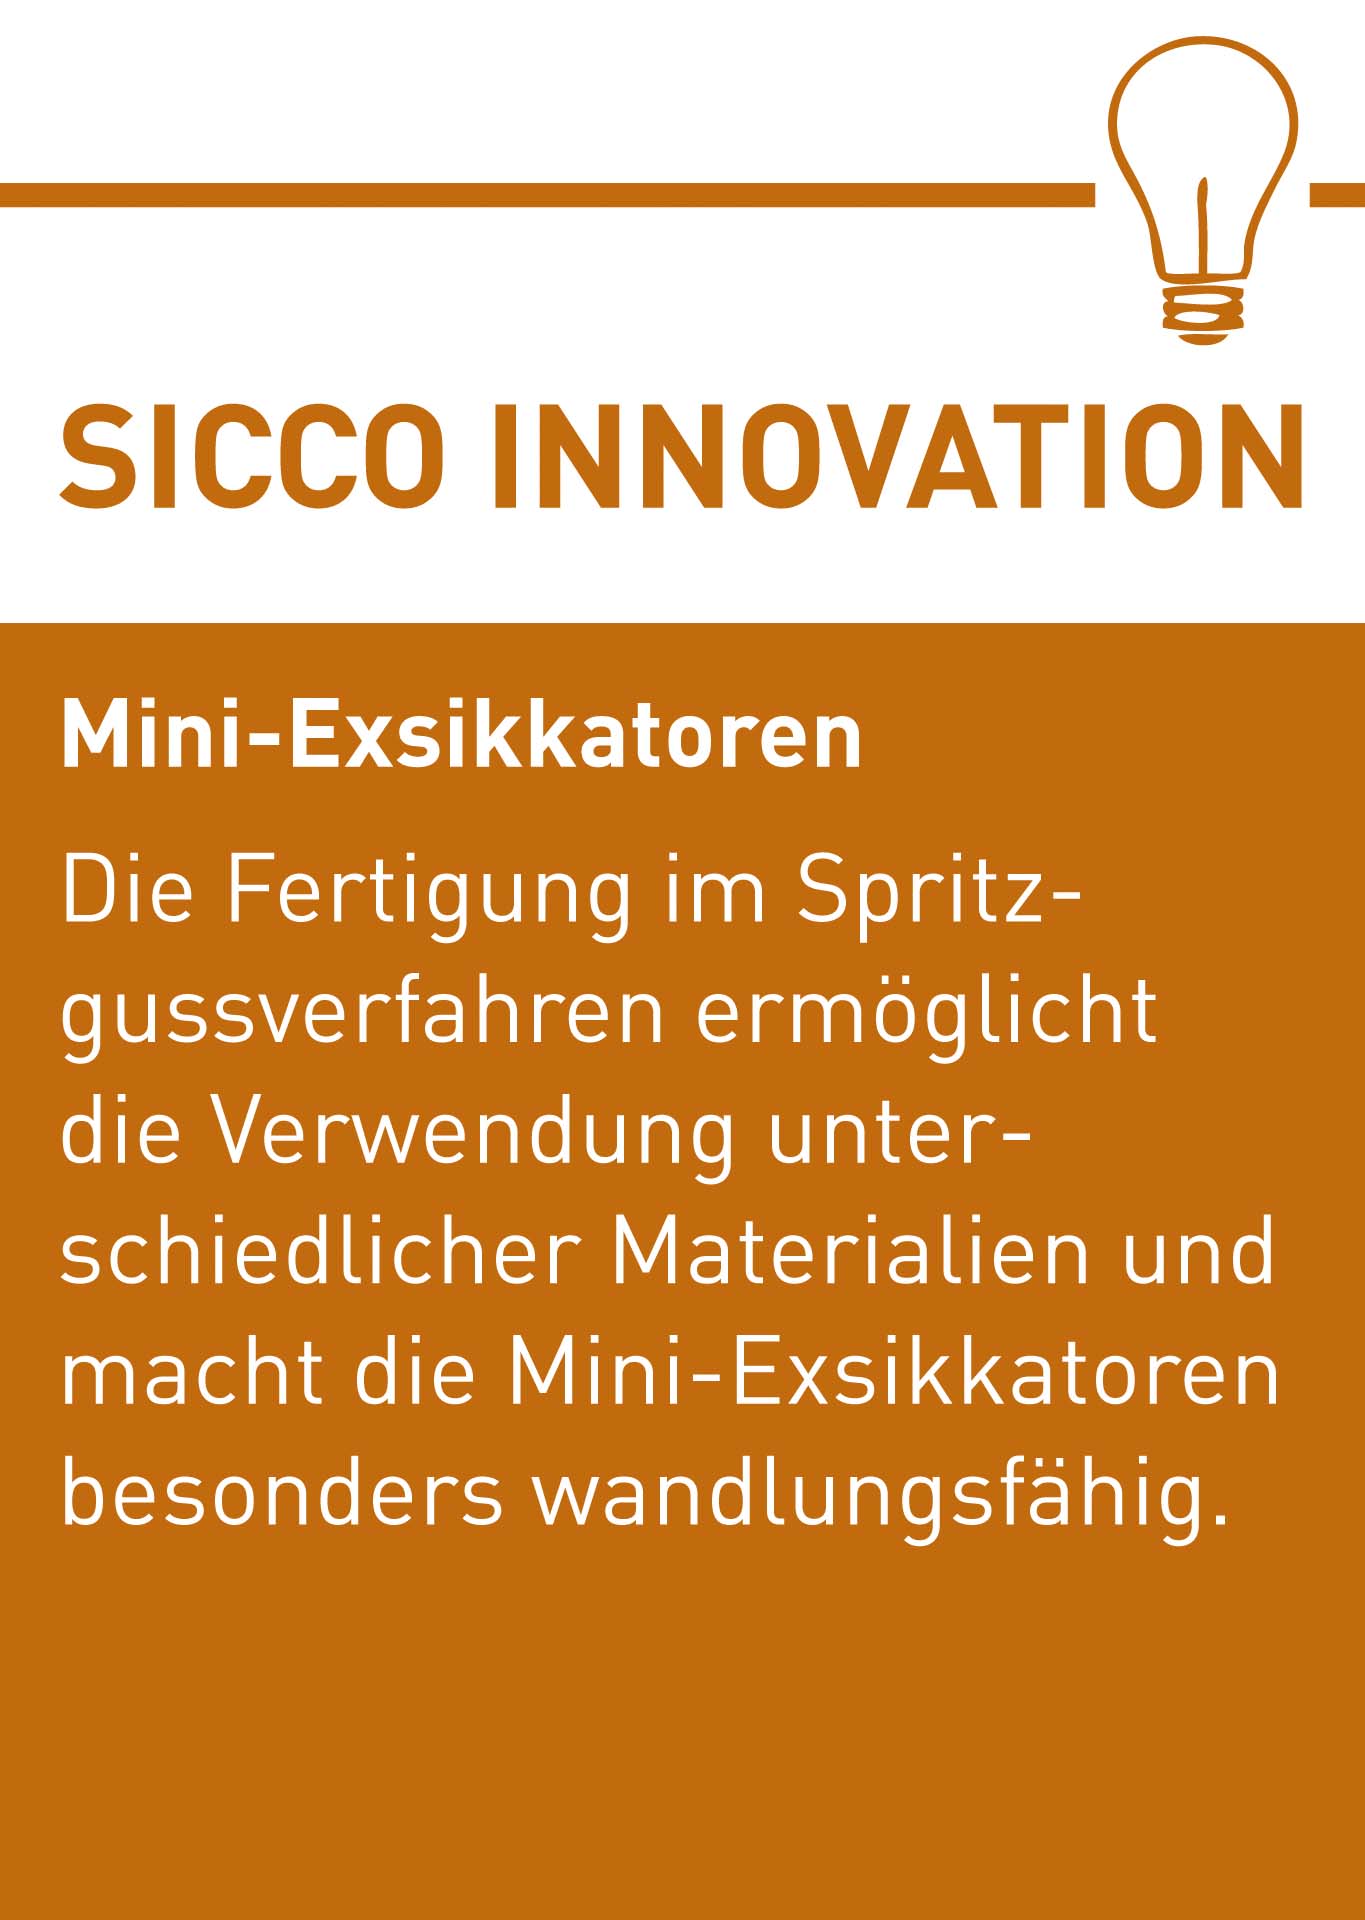 SICCO Innovation Mini Exis D.jpg